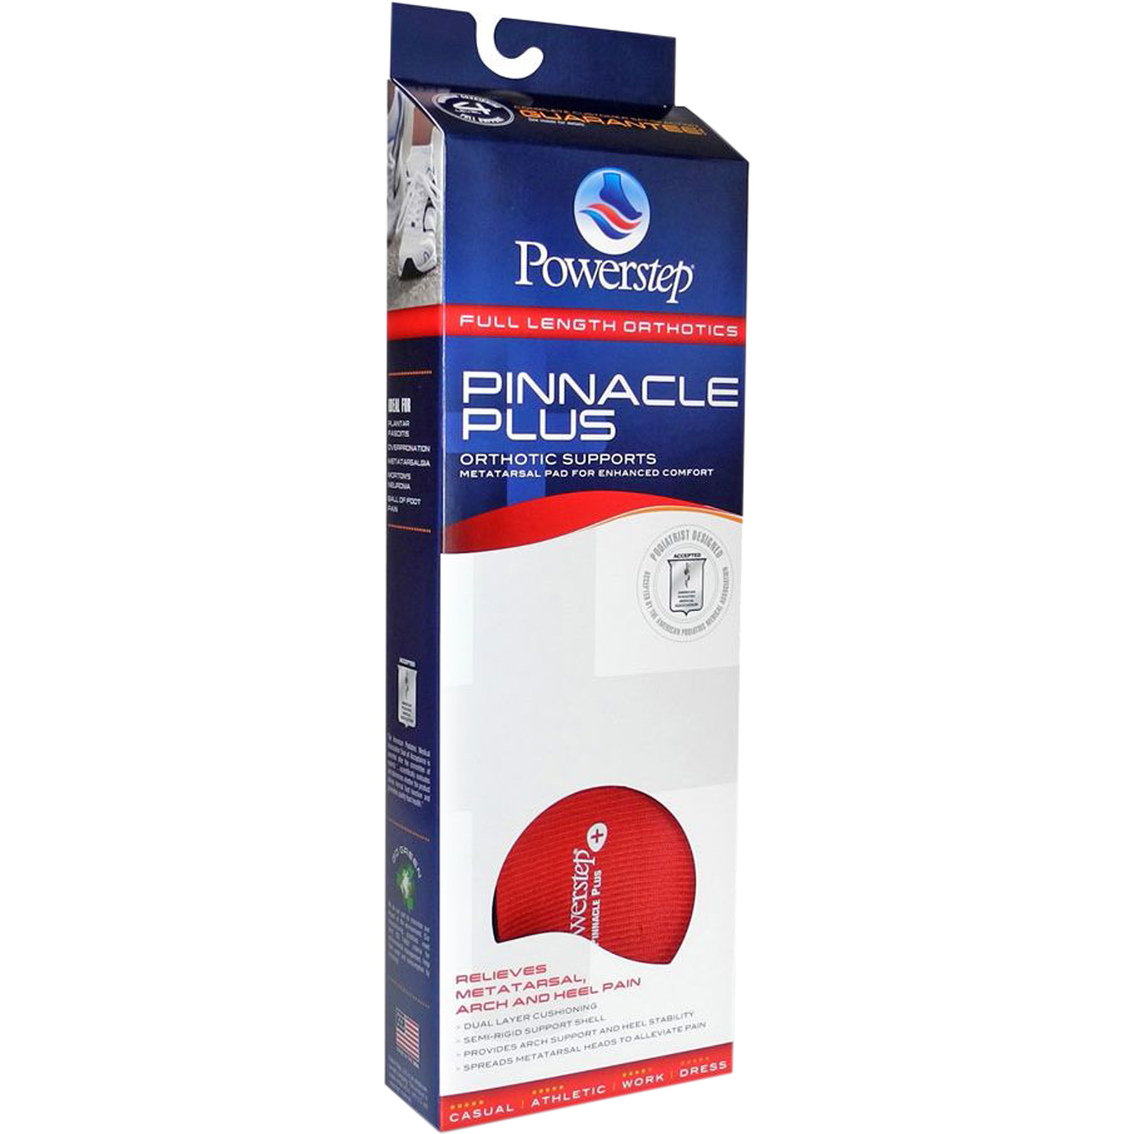 Powerstep Pinnacle Plus Met Full Length Insoles - Image 6 of 6